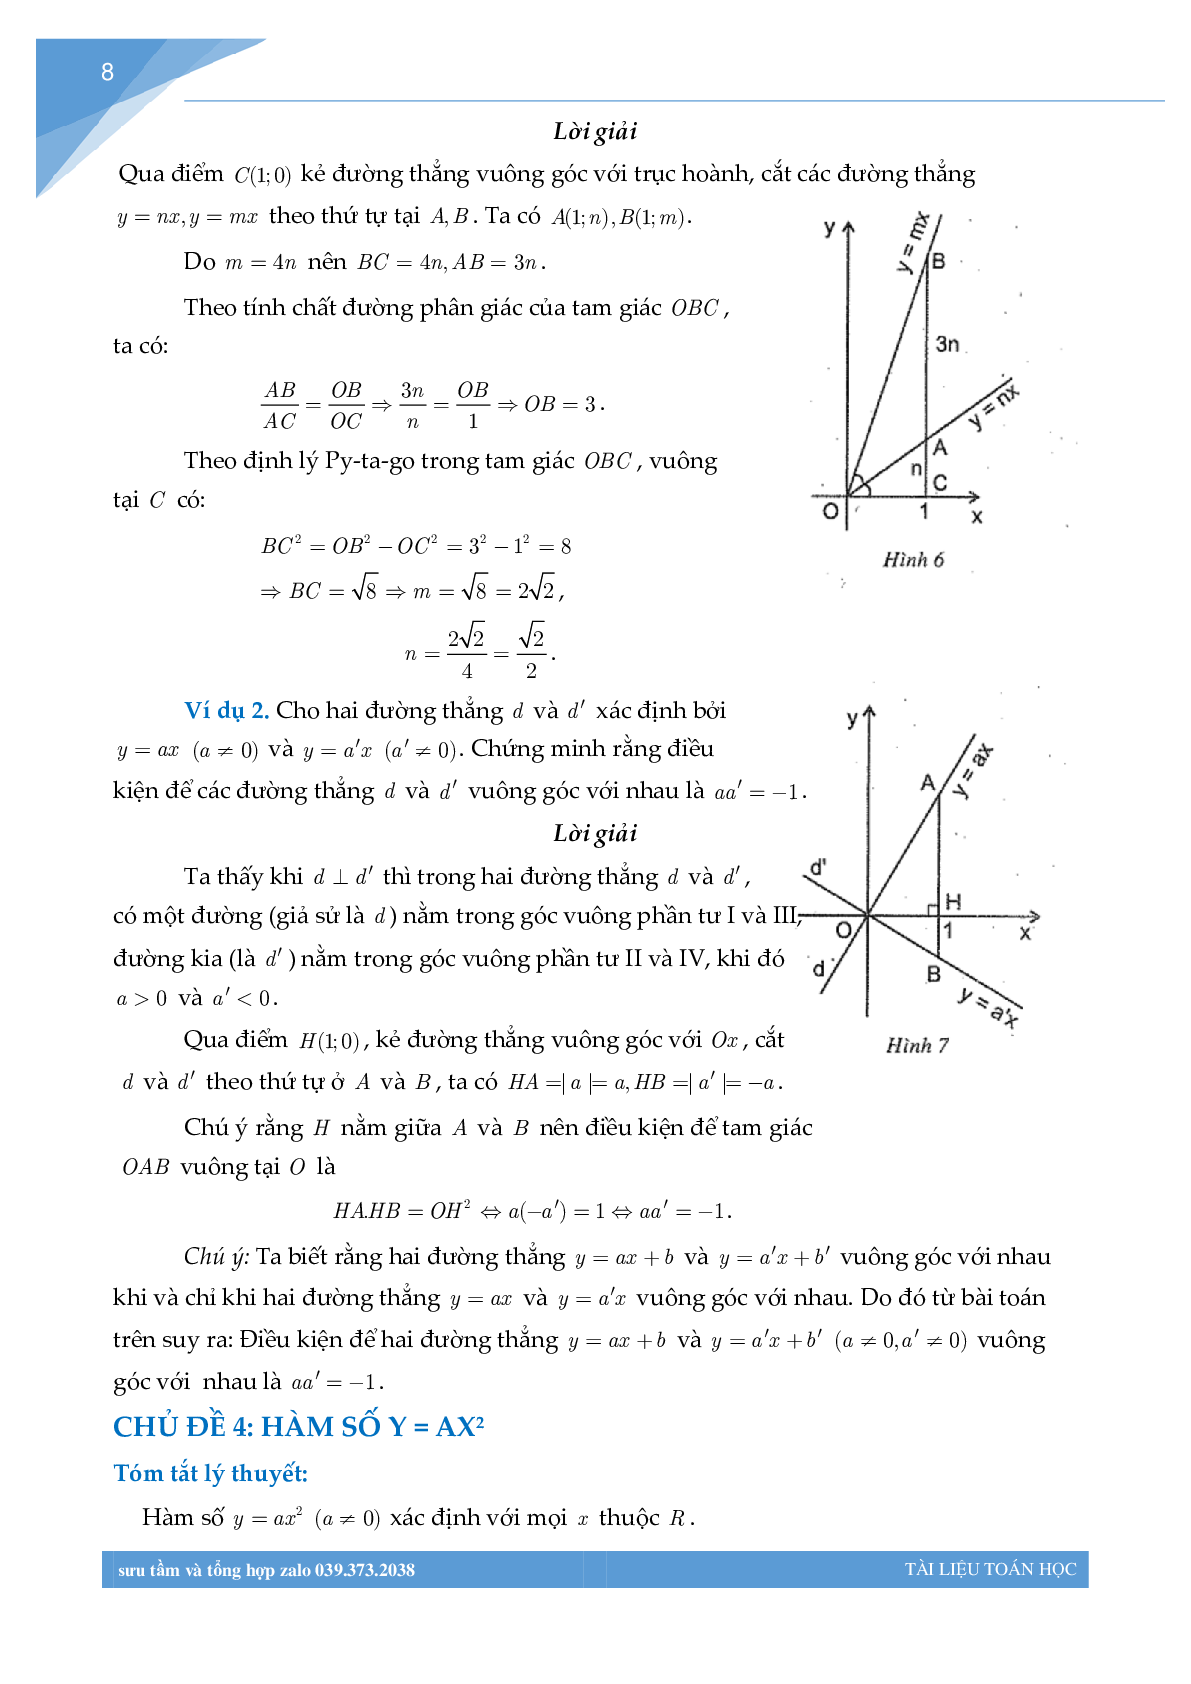 Chuyên đề hàm số bồi dưỡng học sinh giỏi toán THCS (trang 7)